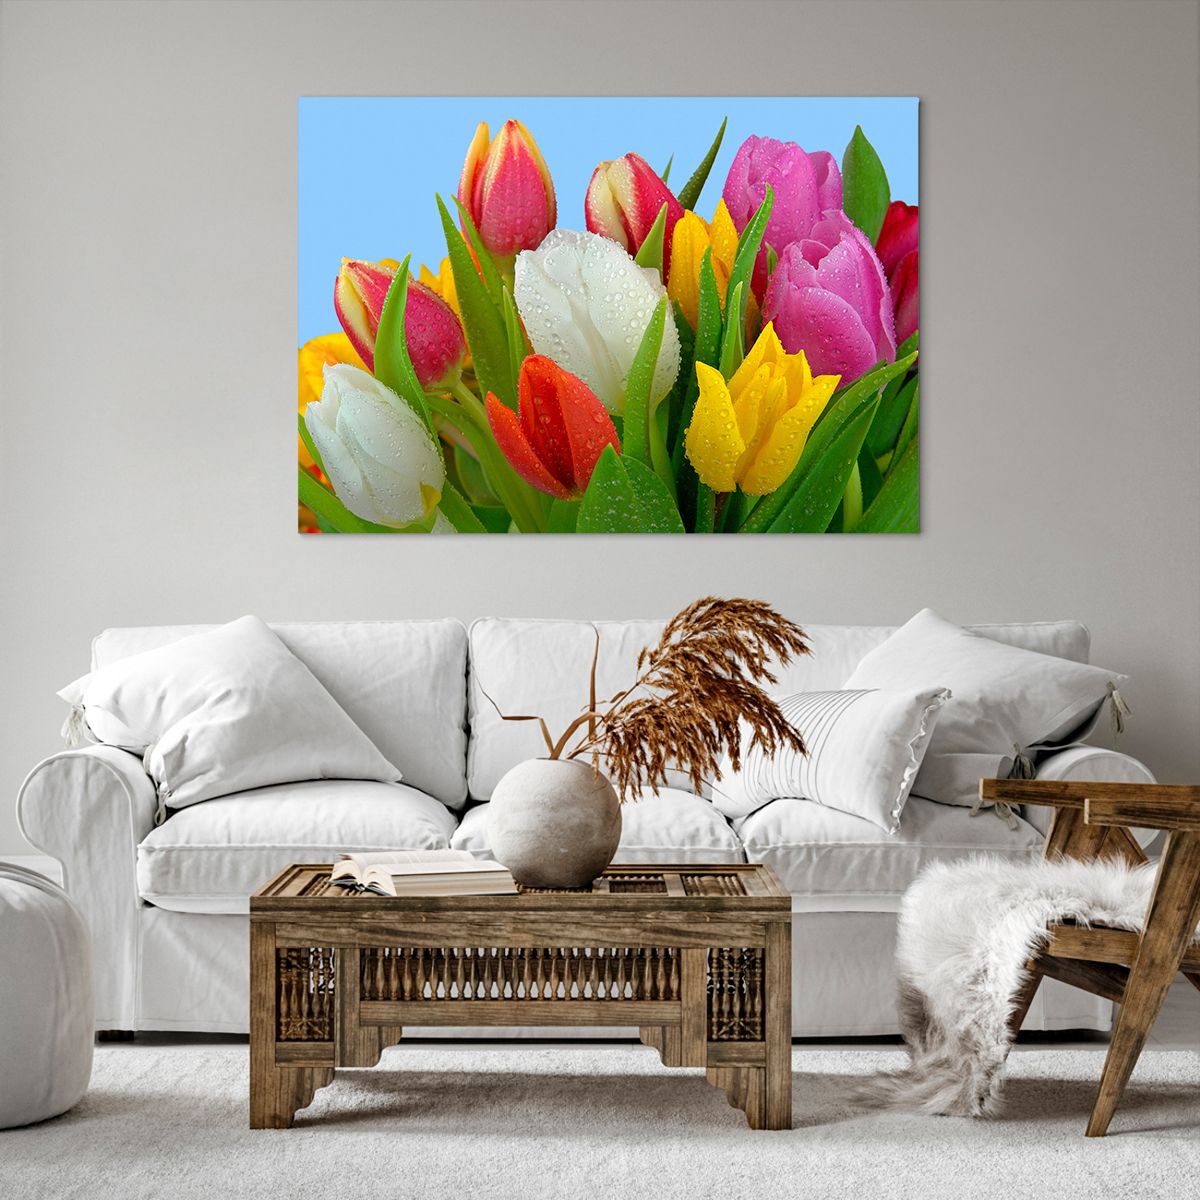 Impression sur toile Tulipes, Impression sur toile Fleurs, Impression sur toile Bouquet De Fleurs, Impression sur toile La Nature, Impression sur toile Fleurs Colorées